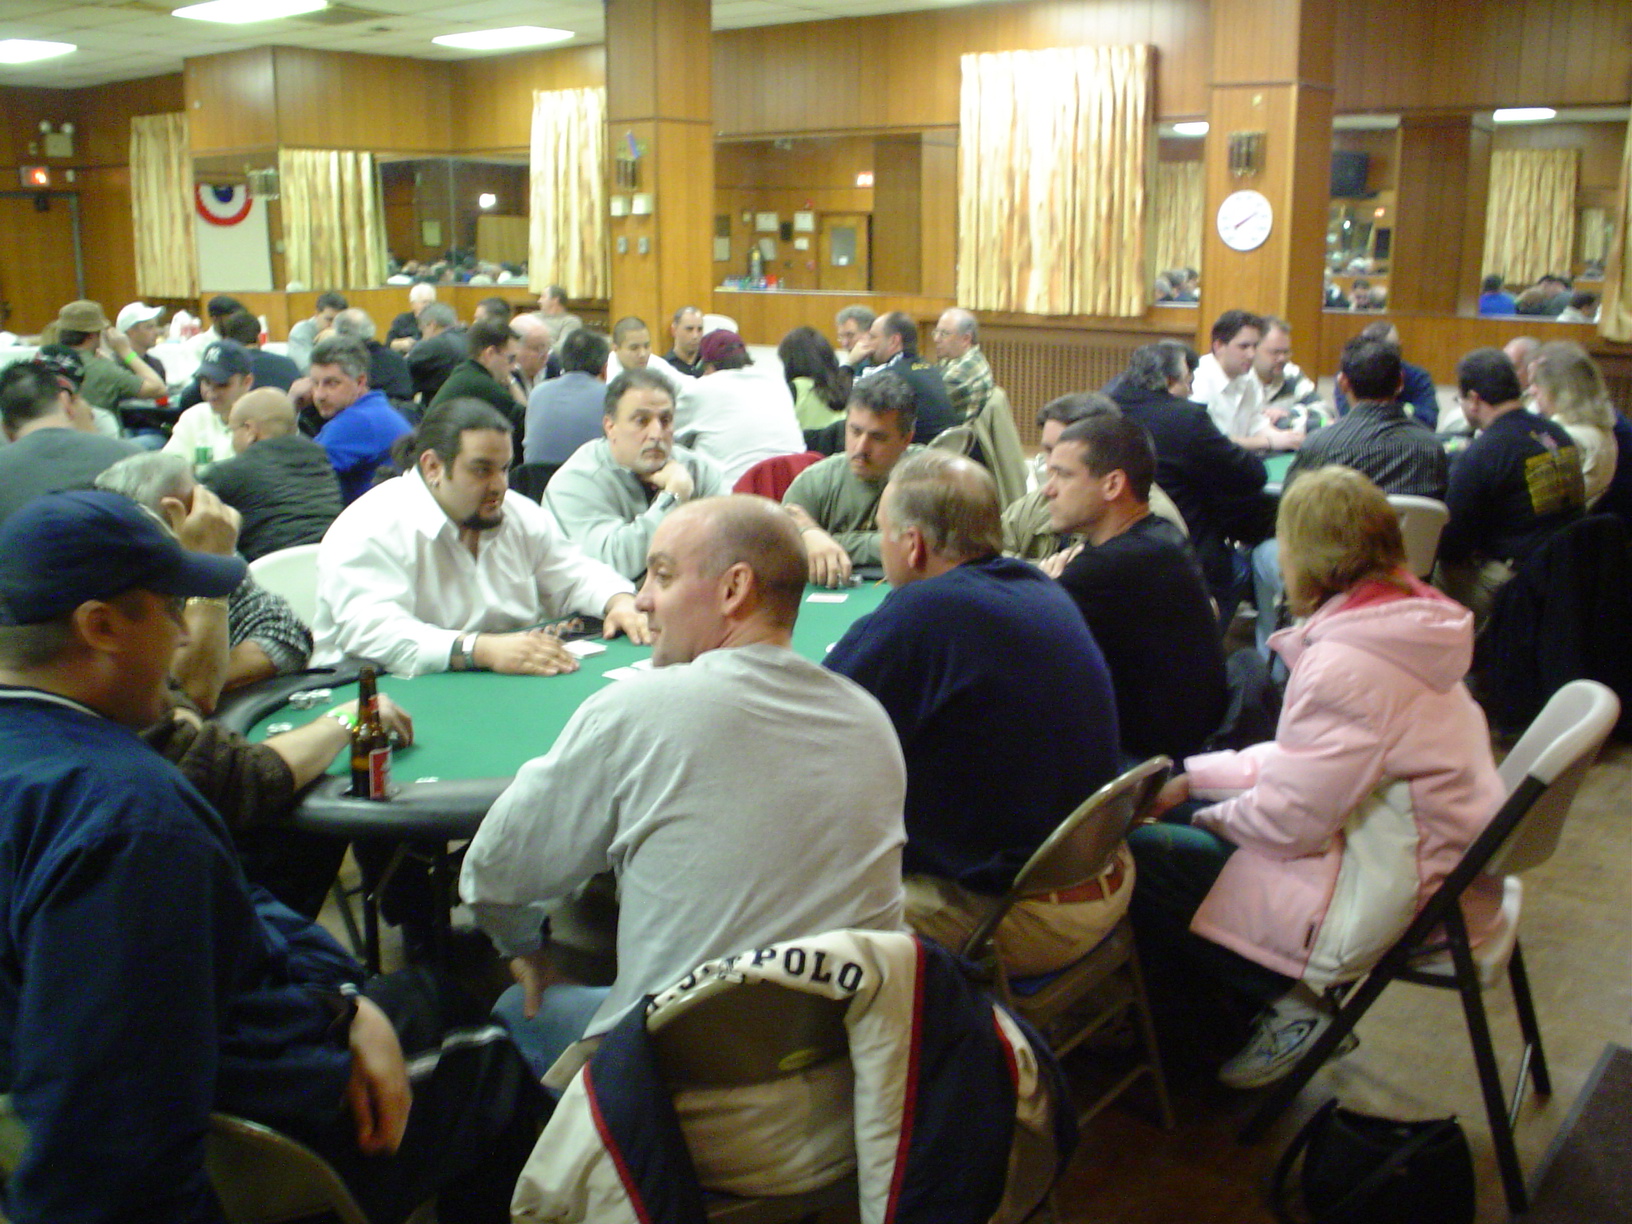 kc poker tournaments